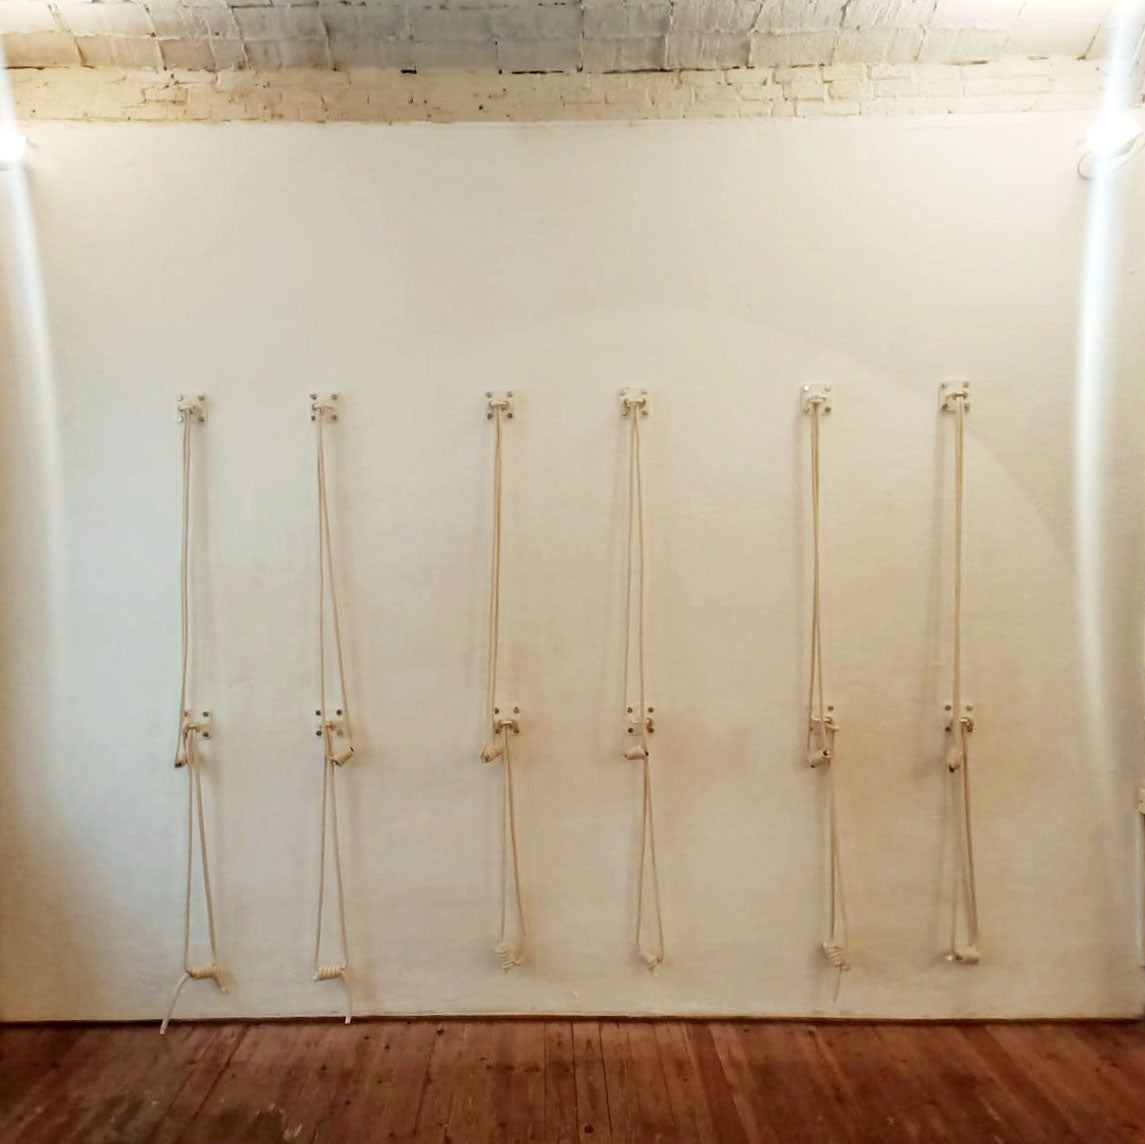 Ensemble complet de cordes murales de yoga – 2 cordes en coton, 2 crochets, kit d'installation